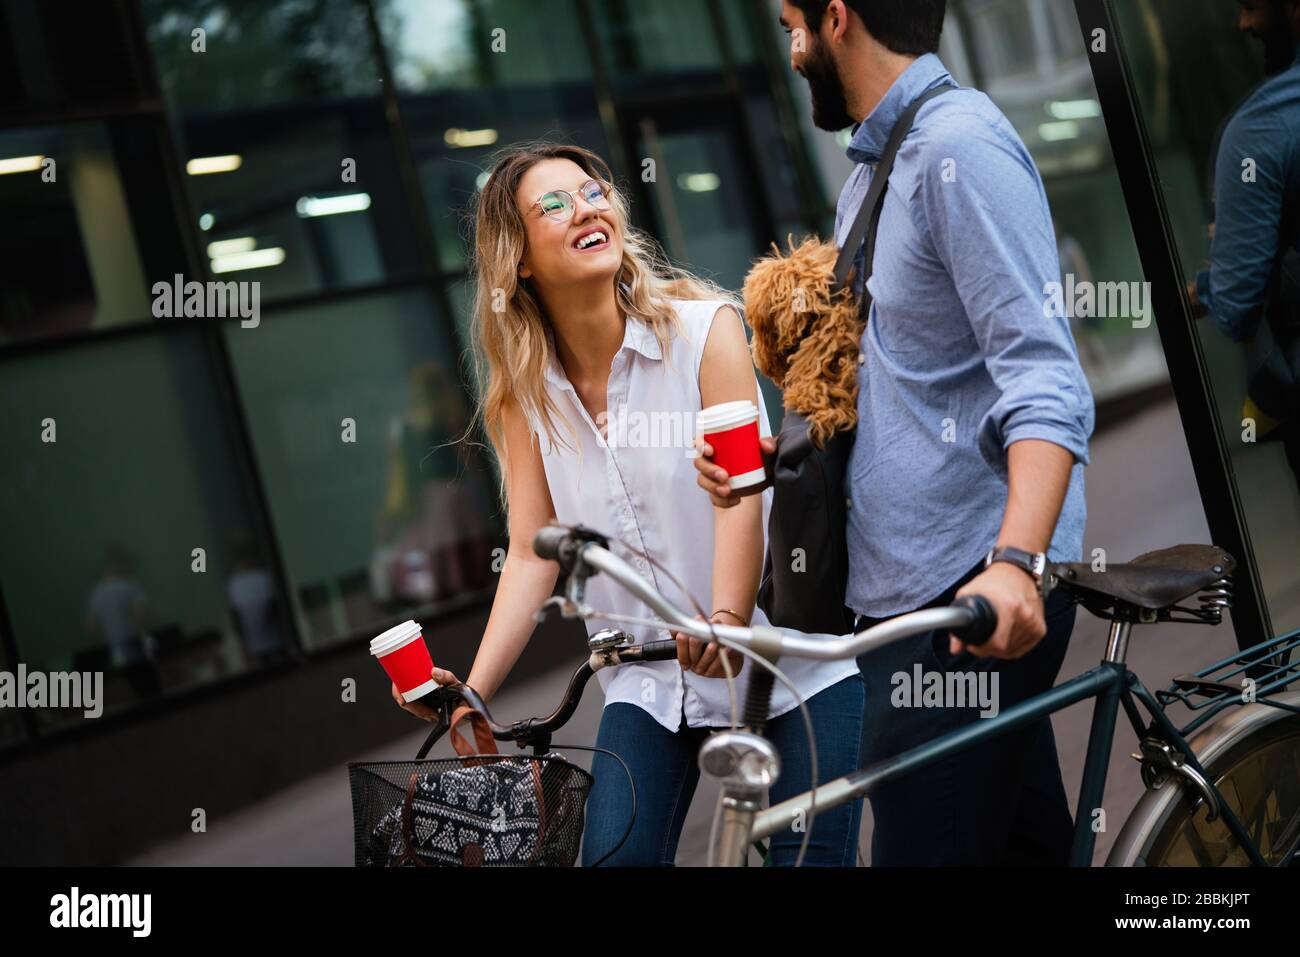 Bicicleta, amor, pareja, relación y el concepto de citas. Pareja con bicicletas en la ciudad Foto de stock